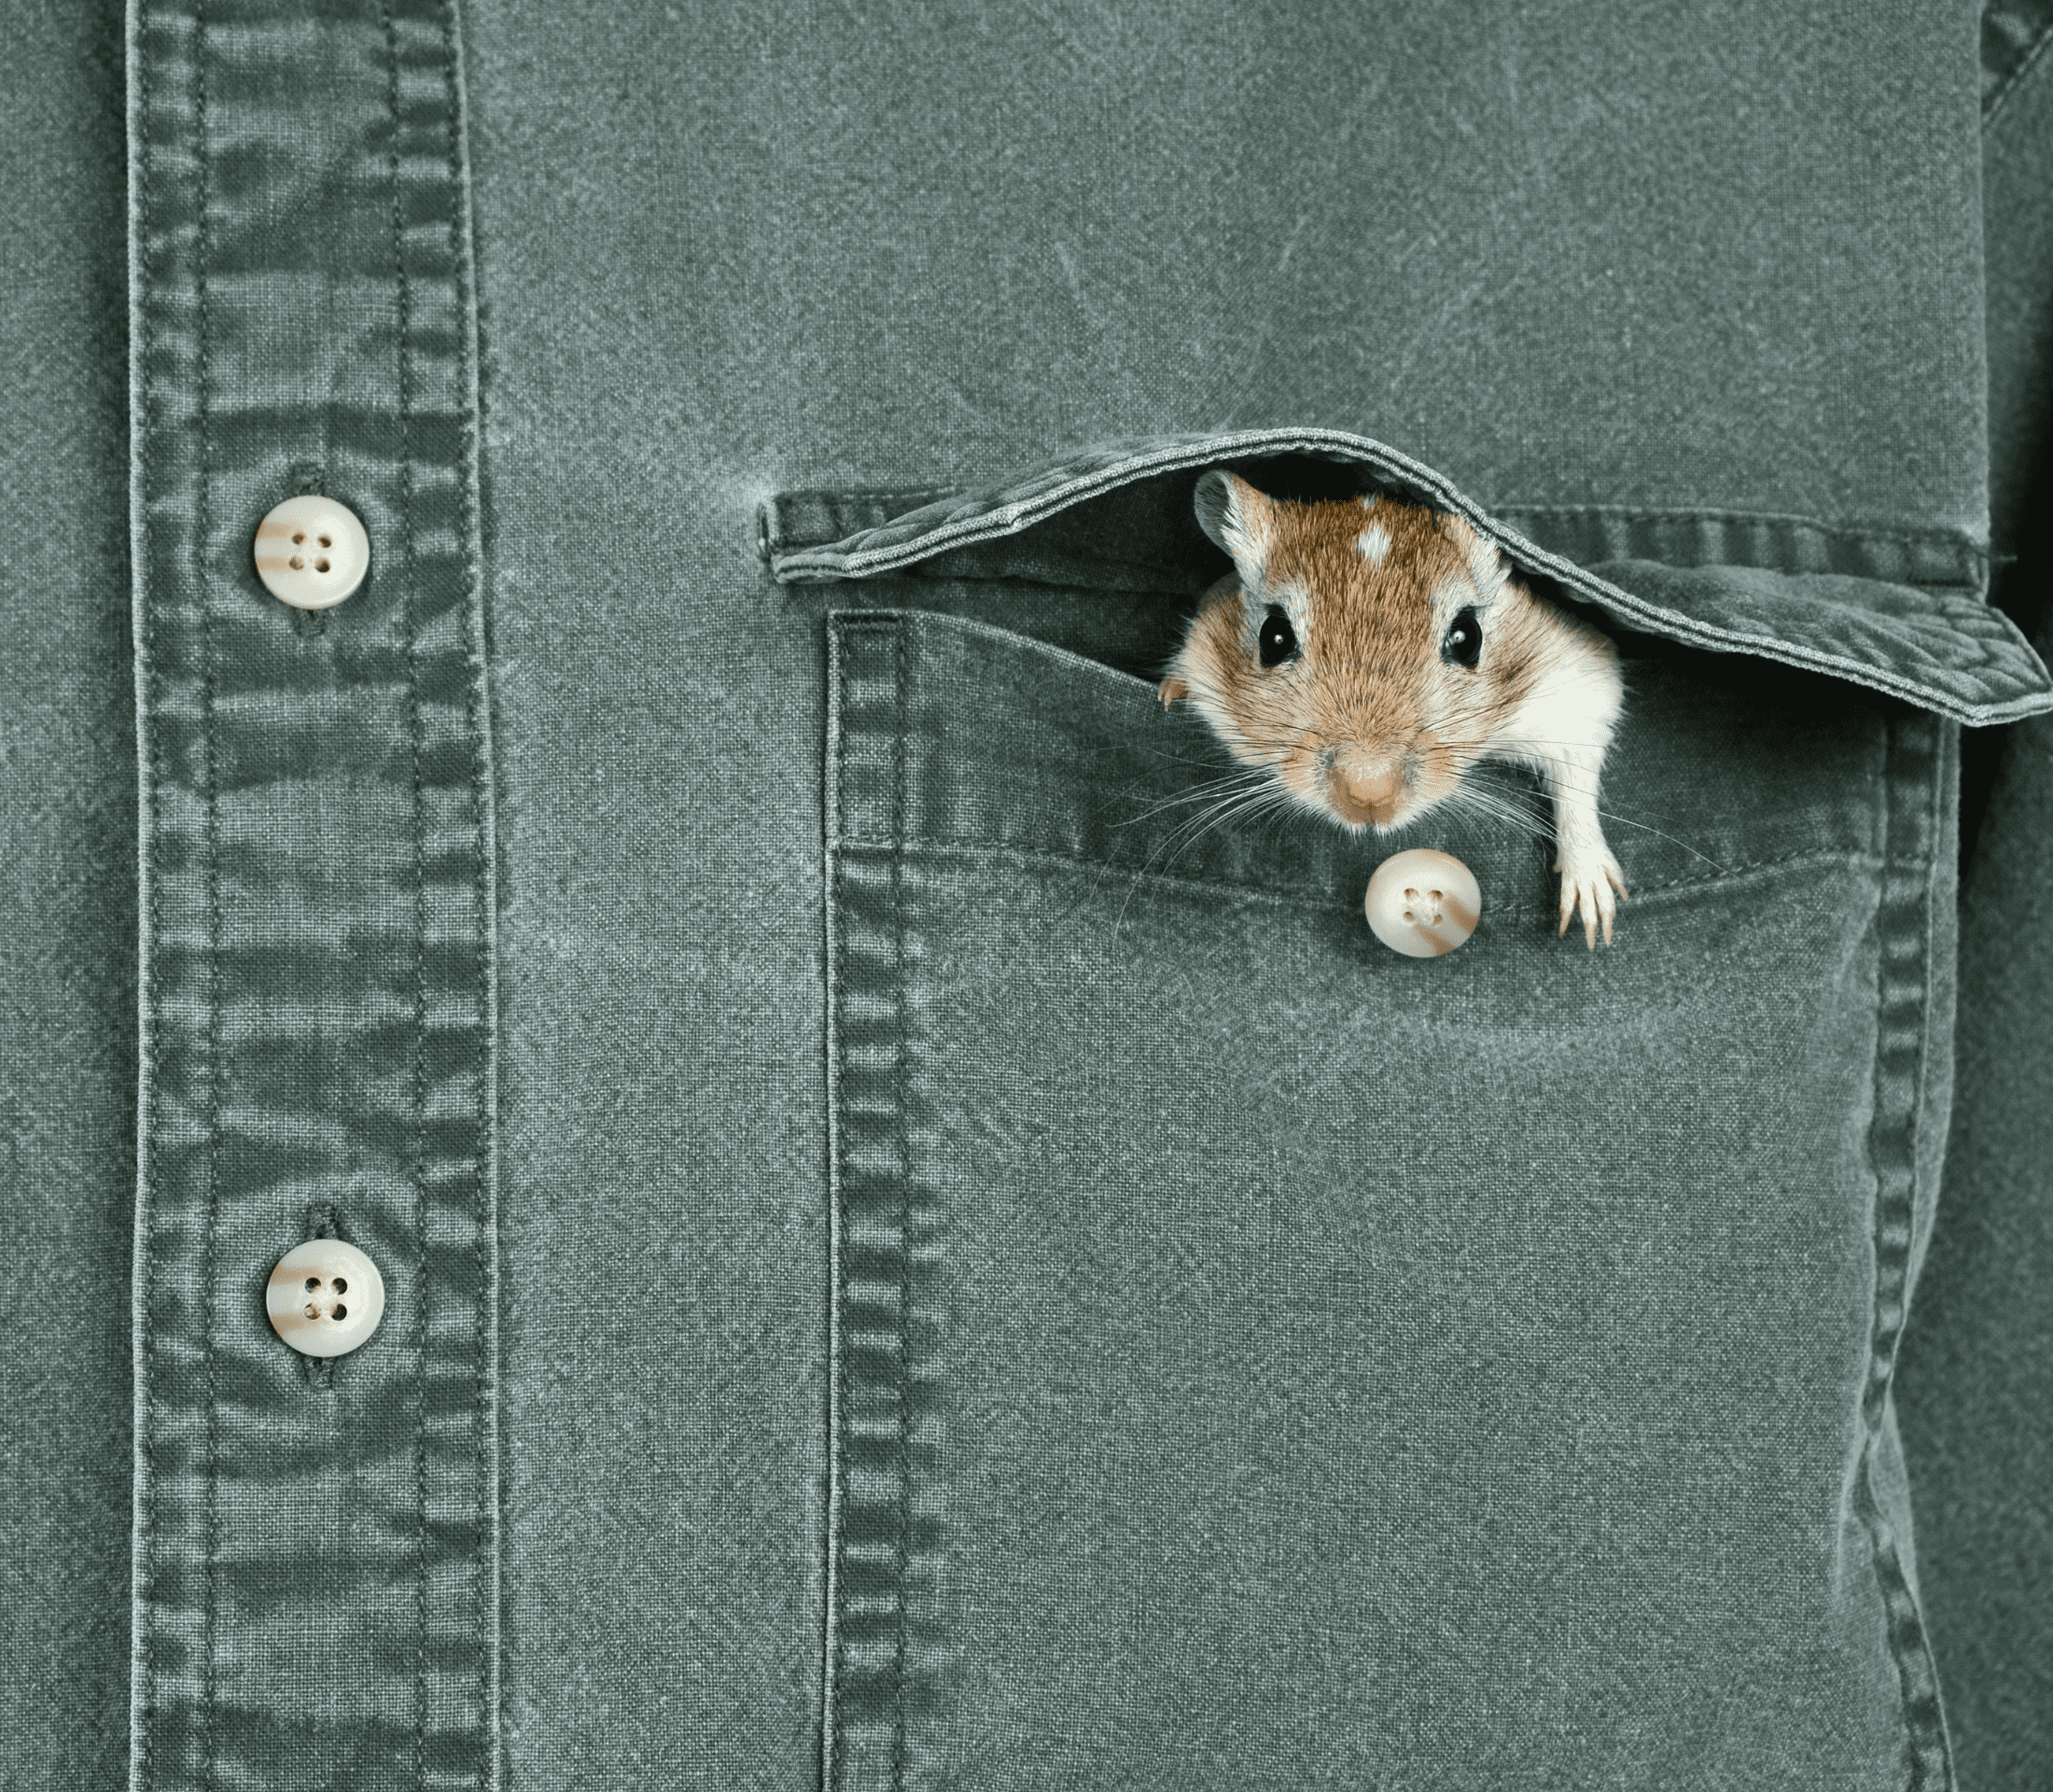 Pocket pet inside a front pocket